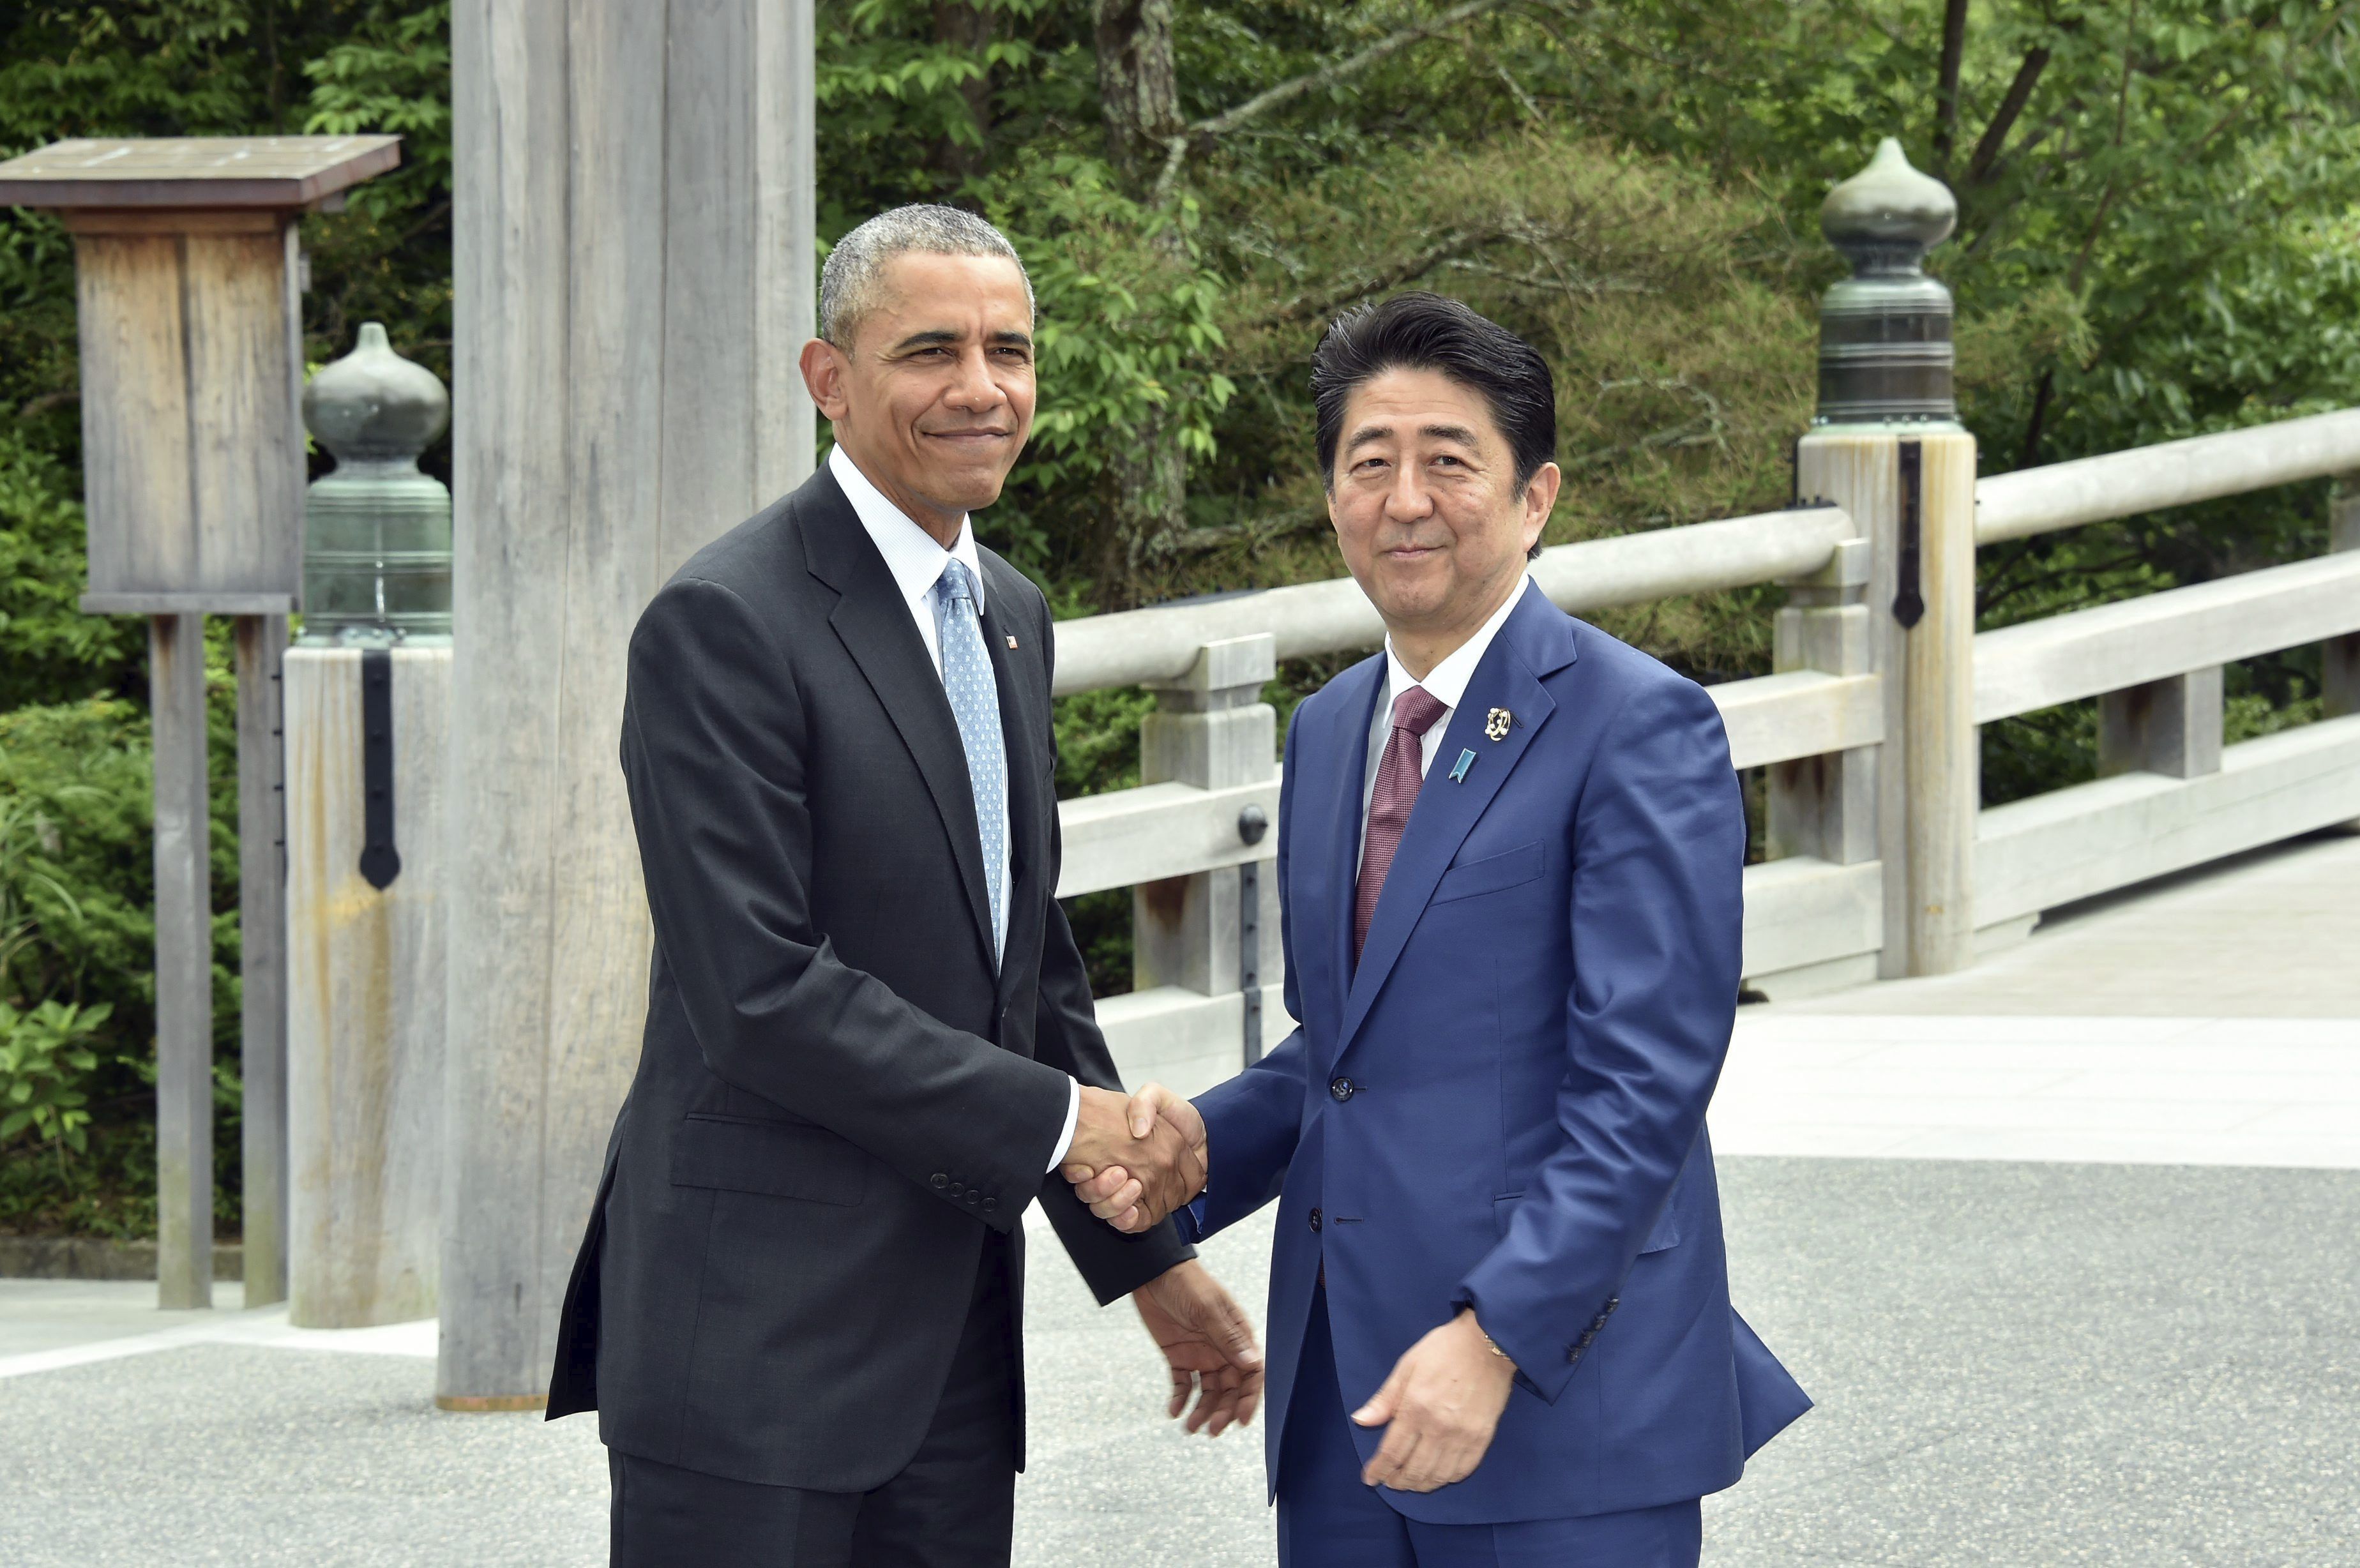 Obama visita Hiroshima 70 años después de la bomba nuclear